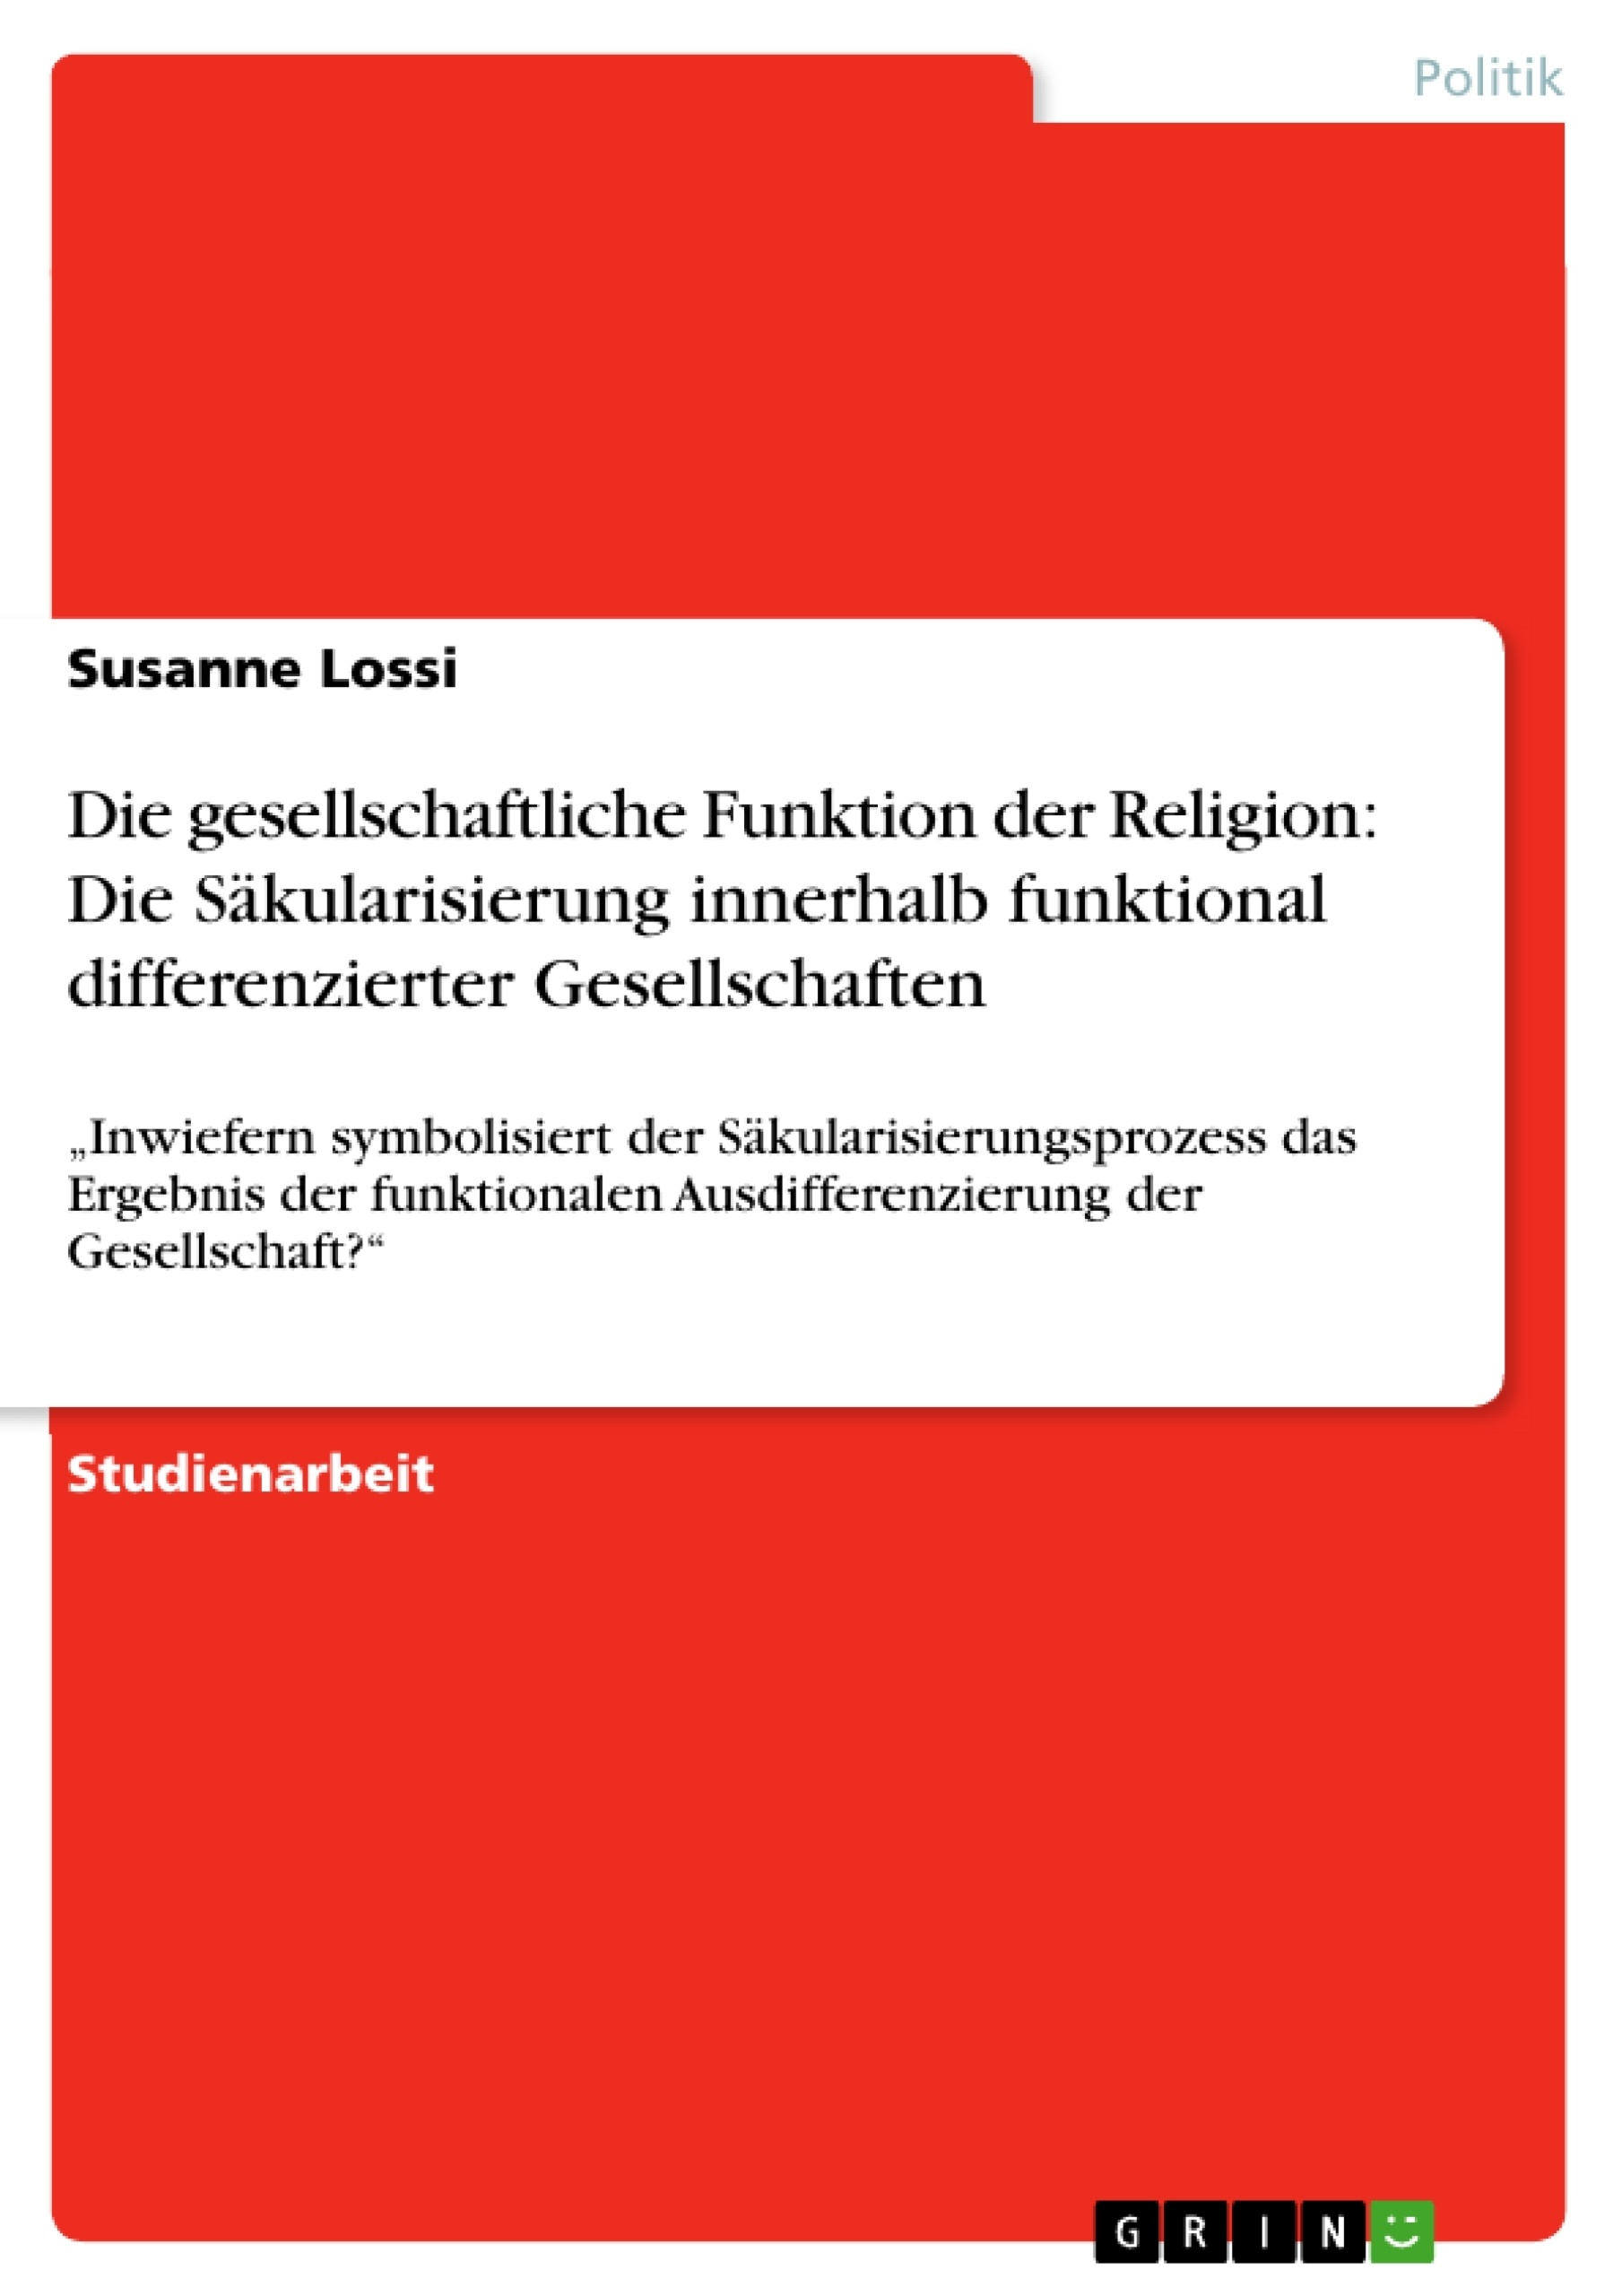 Titel: Die gesellschaftliche Funktion der Religion: Die Säkularisierung innerhalb funktional differenzierter Gesellschaften  